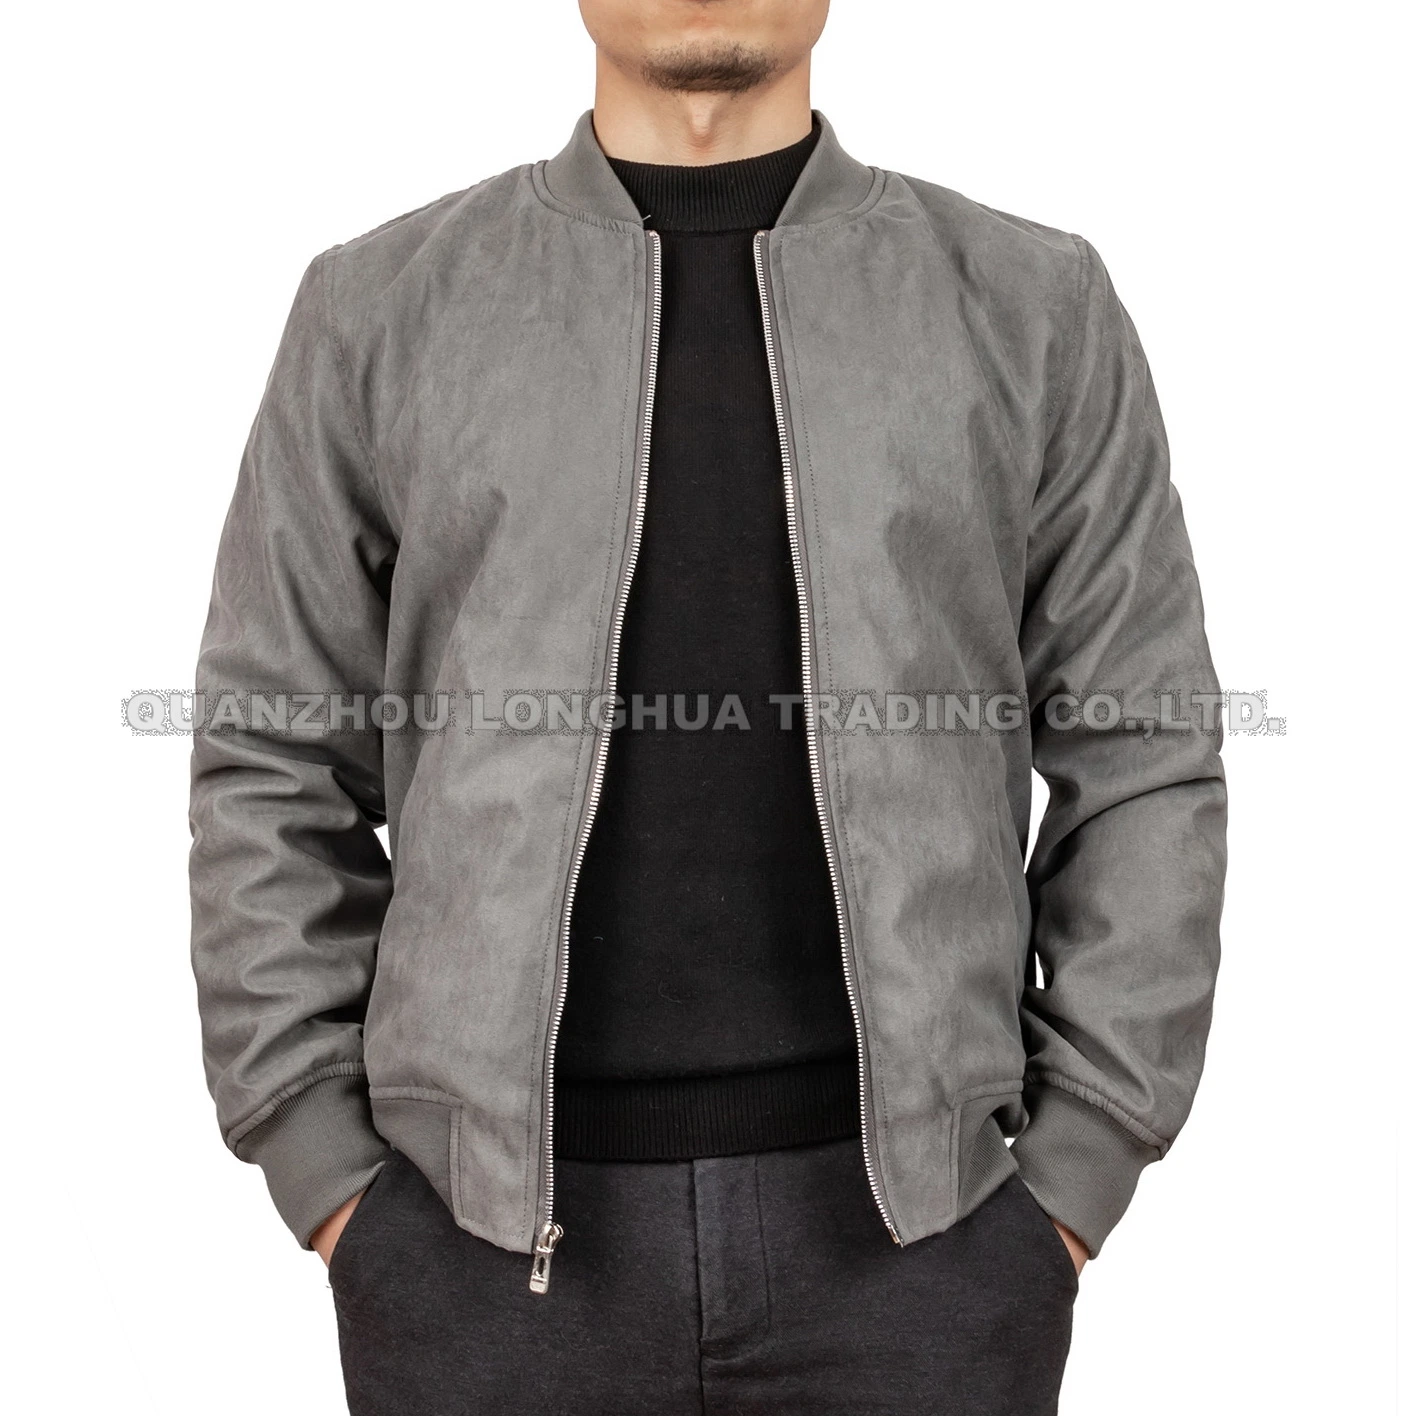 Мужская куртка мальчик куртка Woven Fashion Suede Apparel Grey Beige Одежда Одежда для работы на открытом воздухе